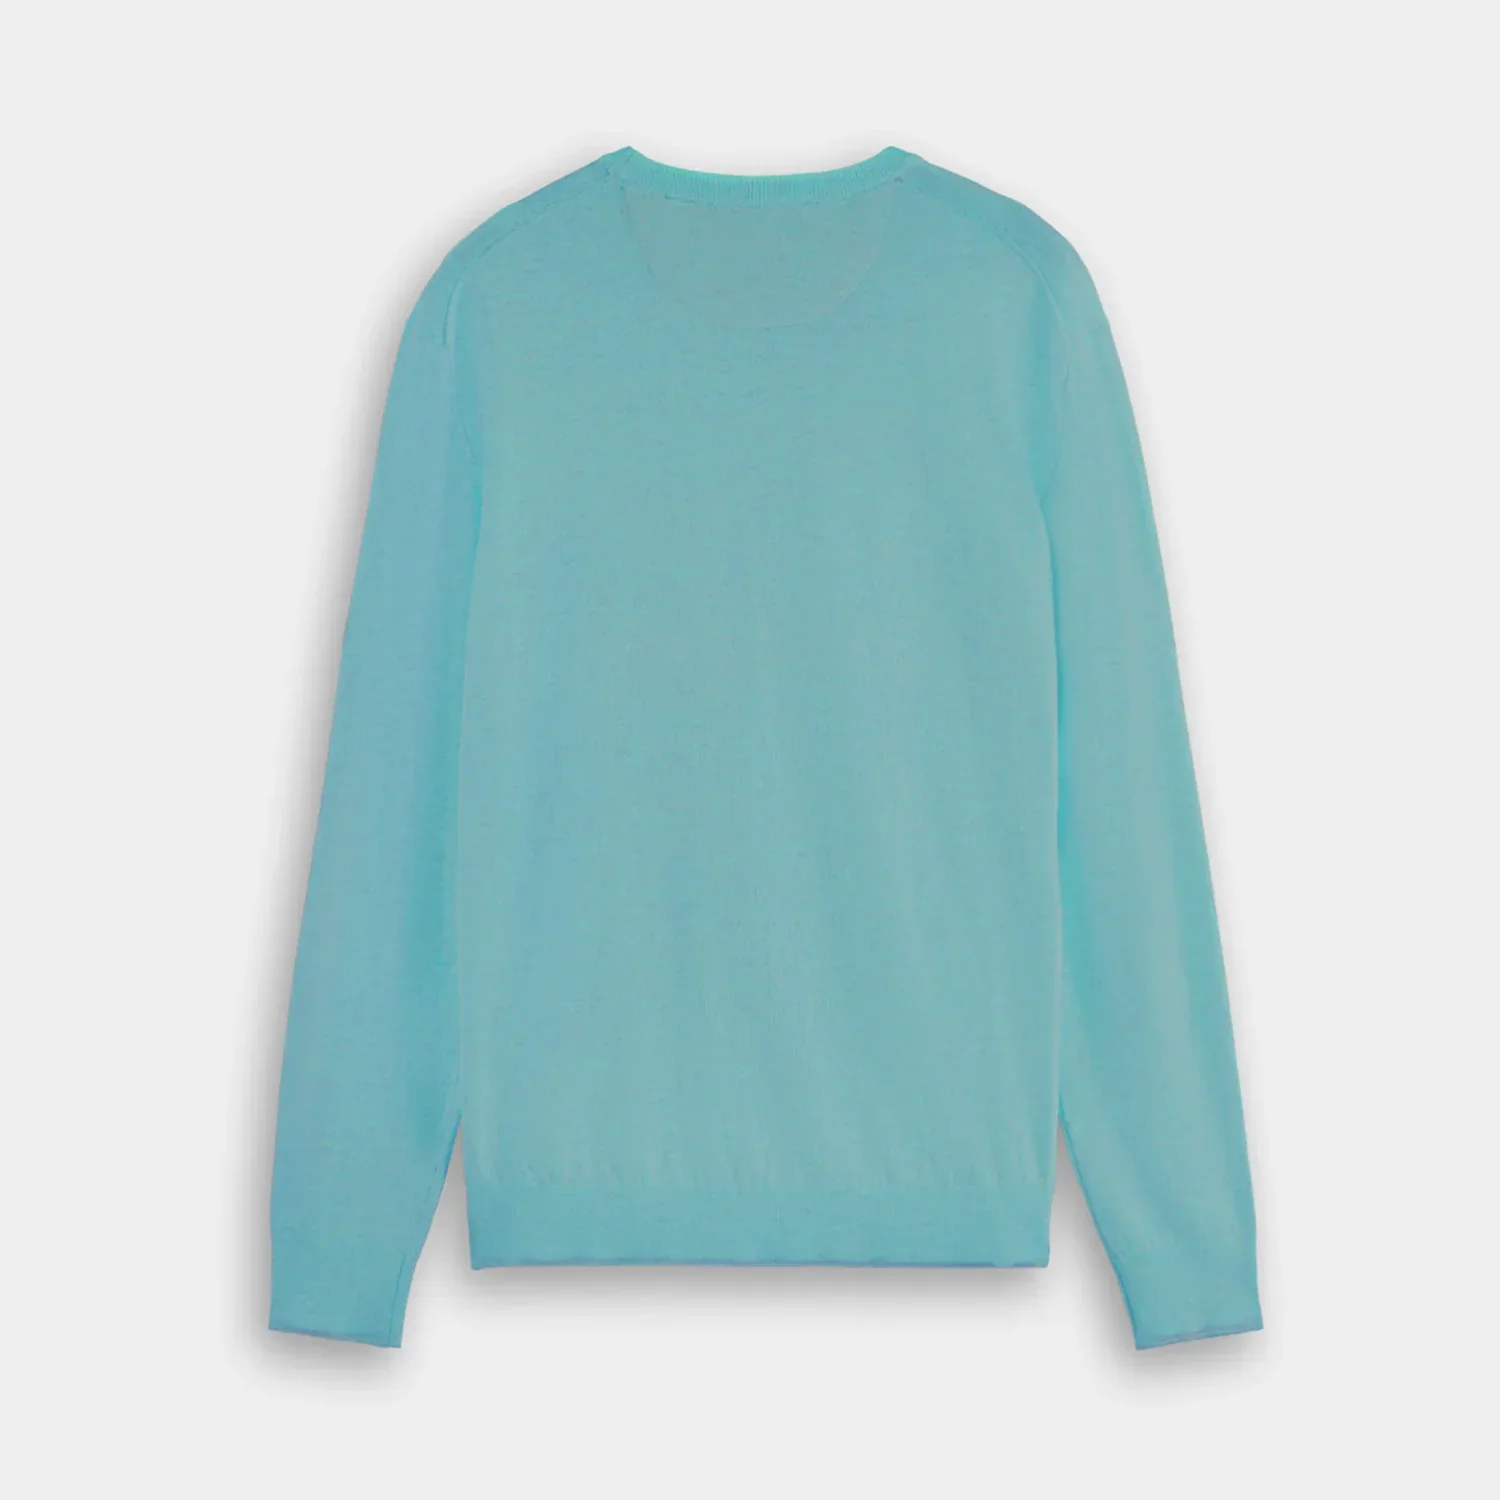 'Scotch & Soda Crew Neck Pullover Sweater' in 'Topaz' colour